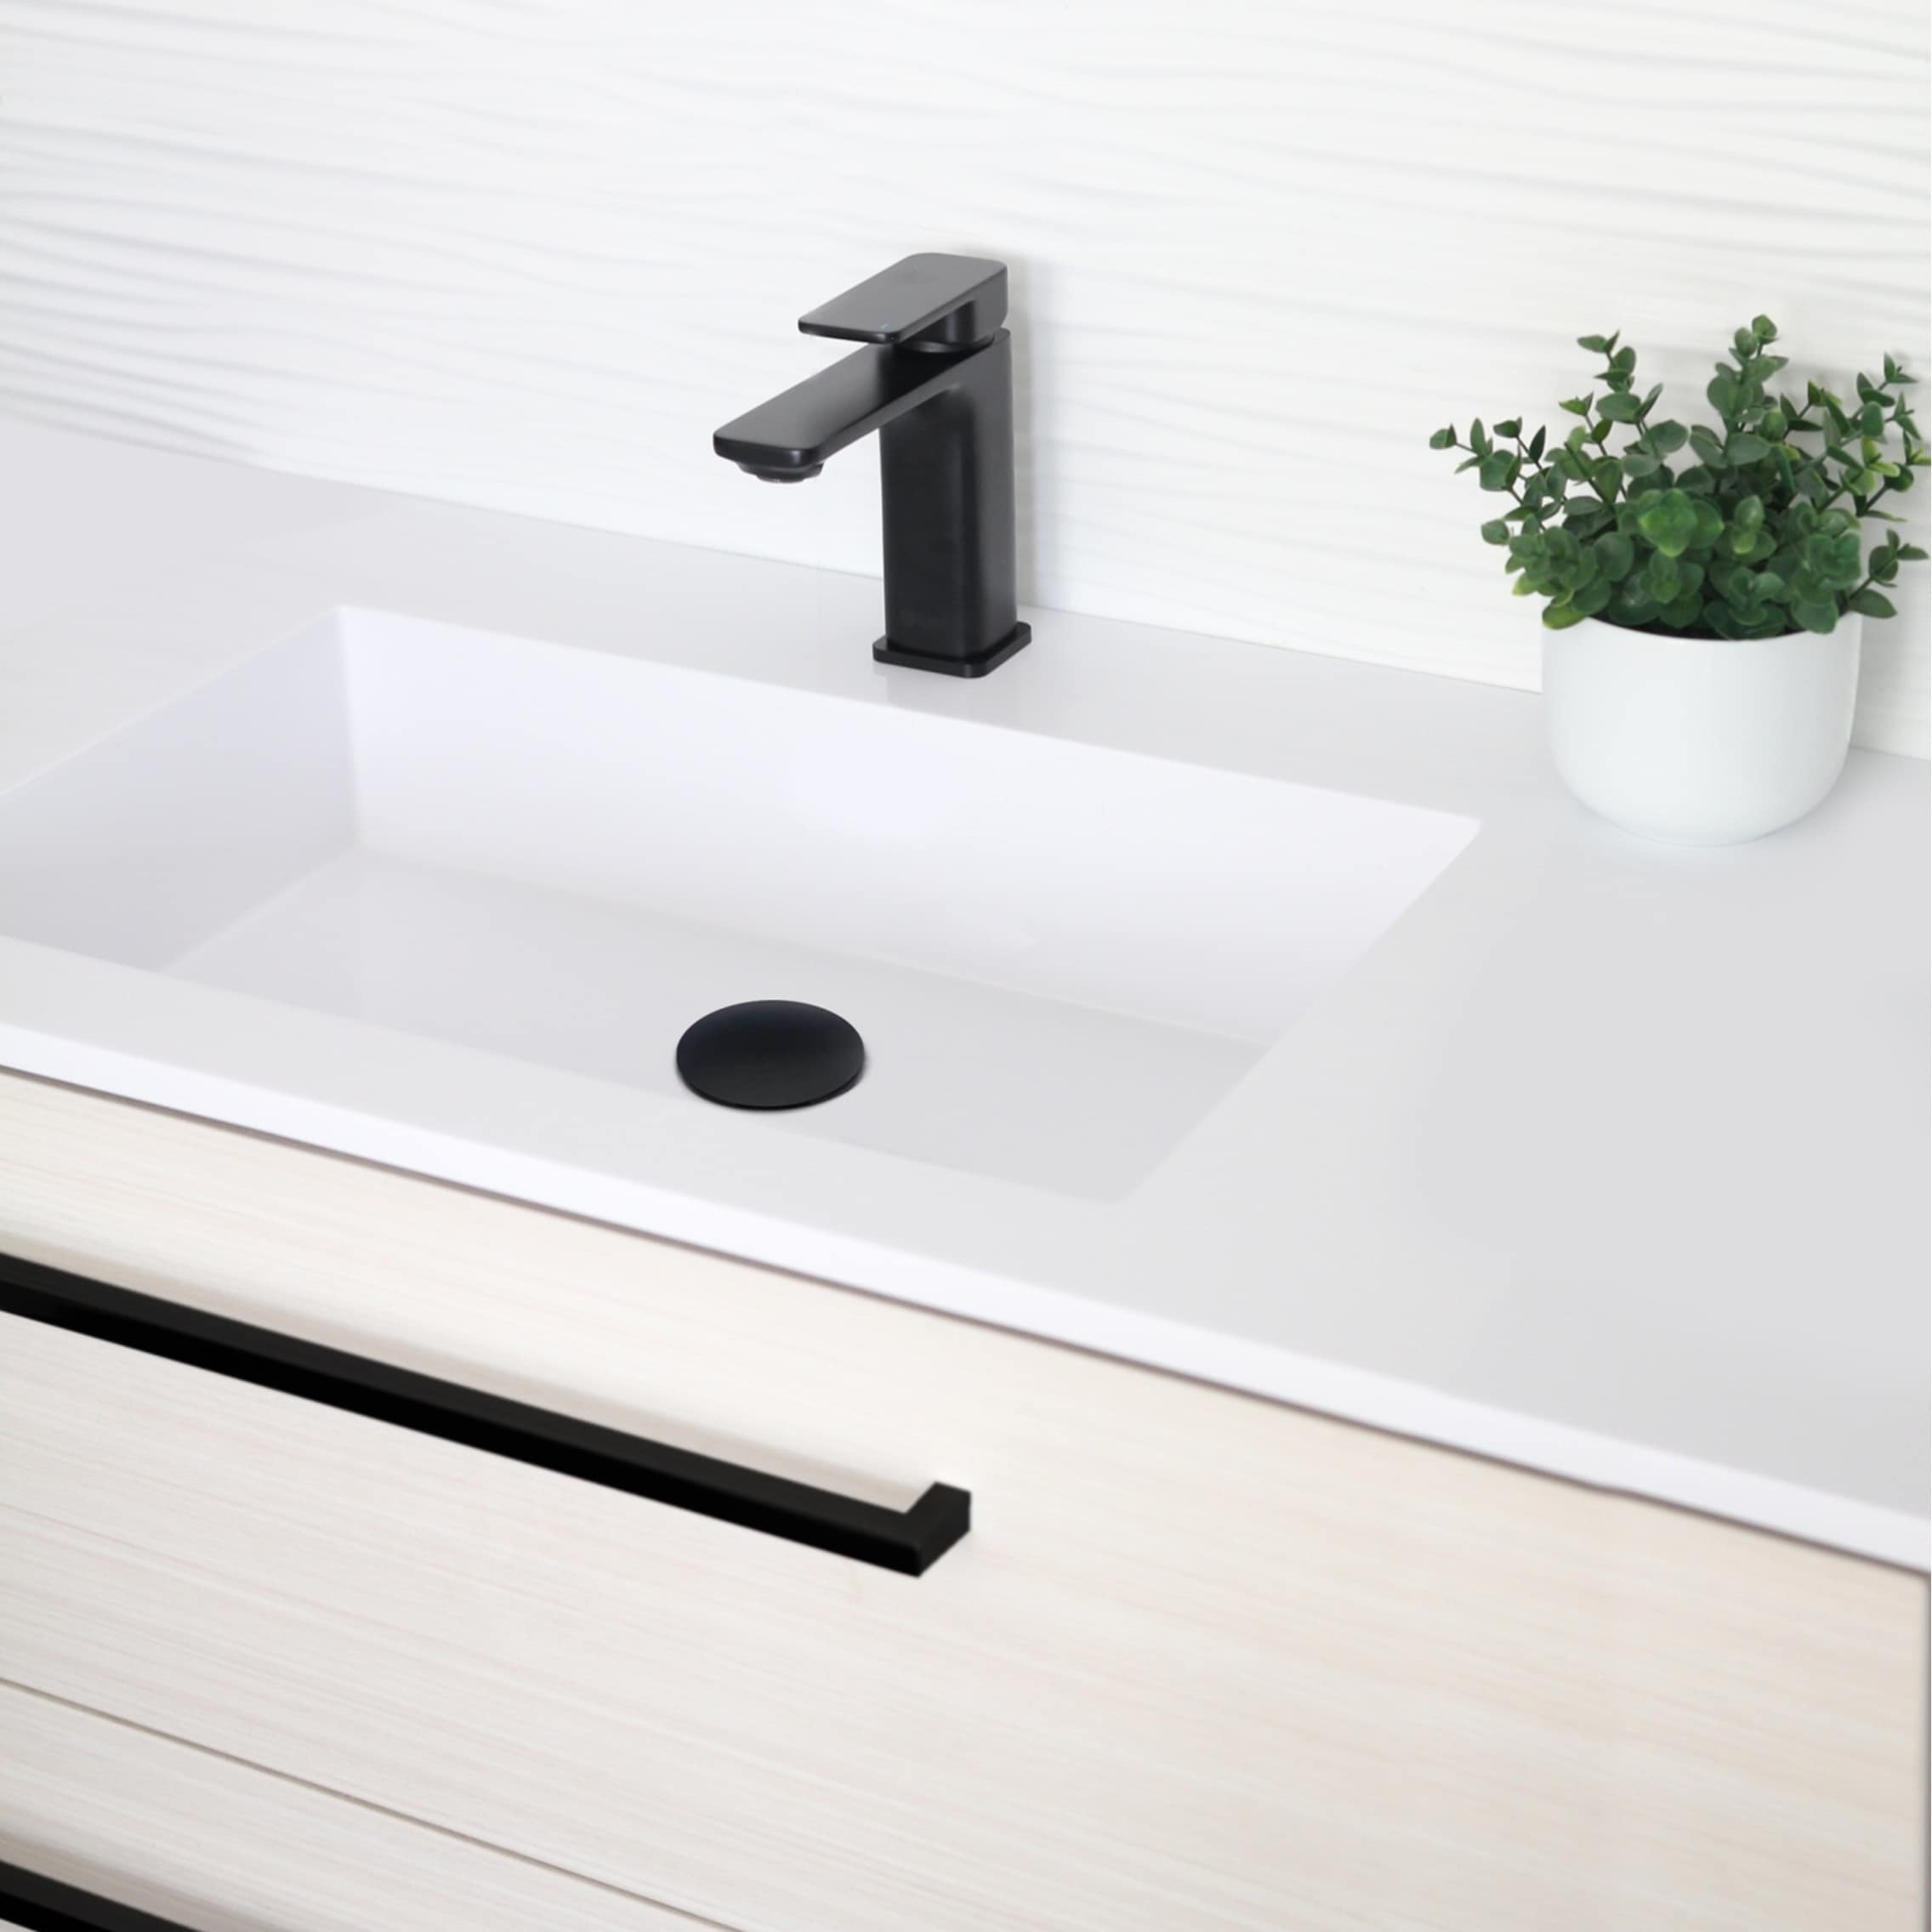 Vita Details about   Single Handle Bathroom Faucet B102C 